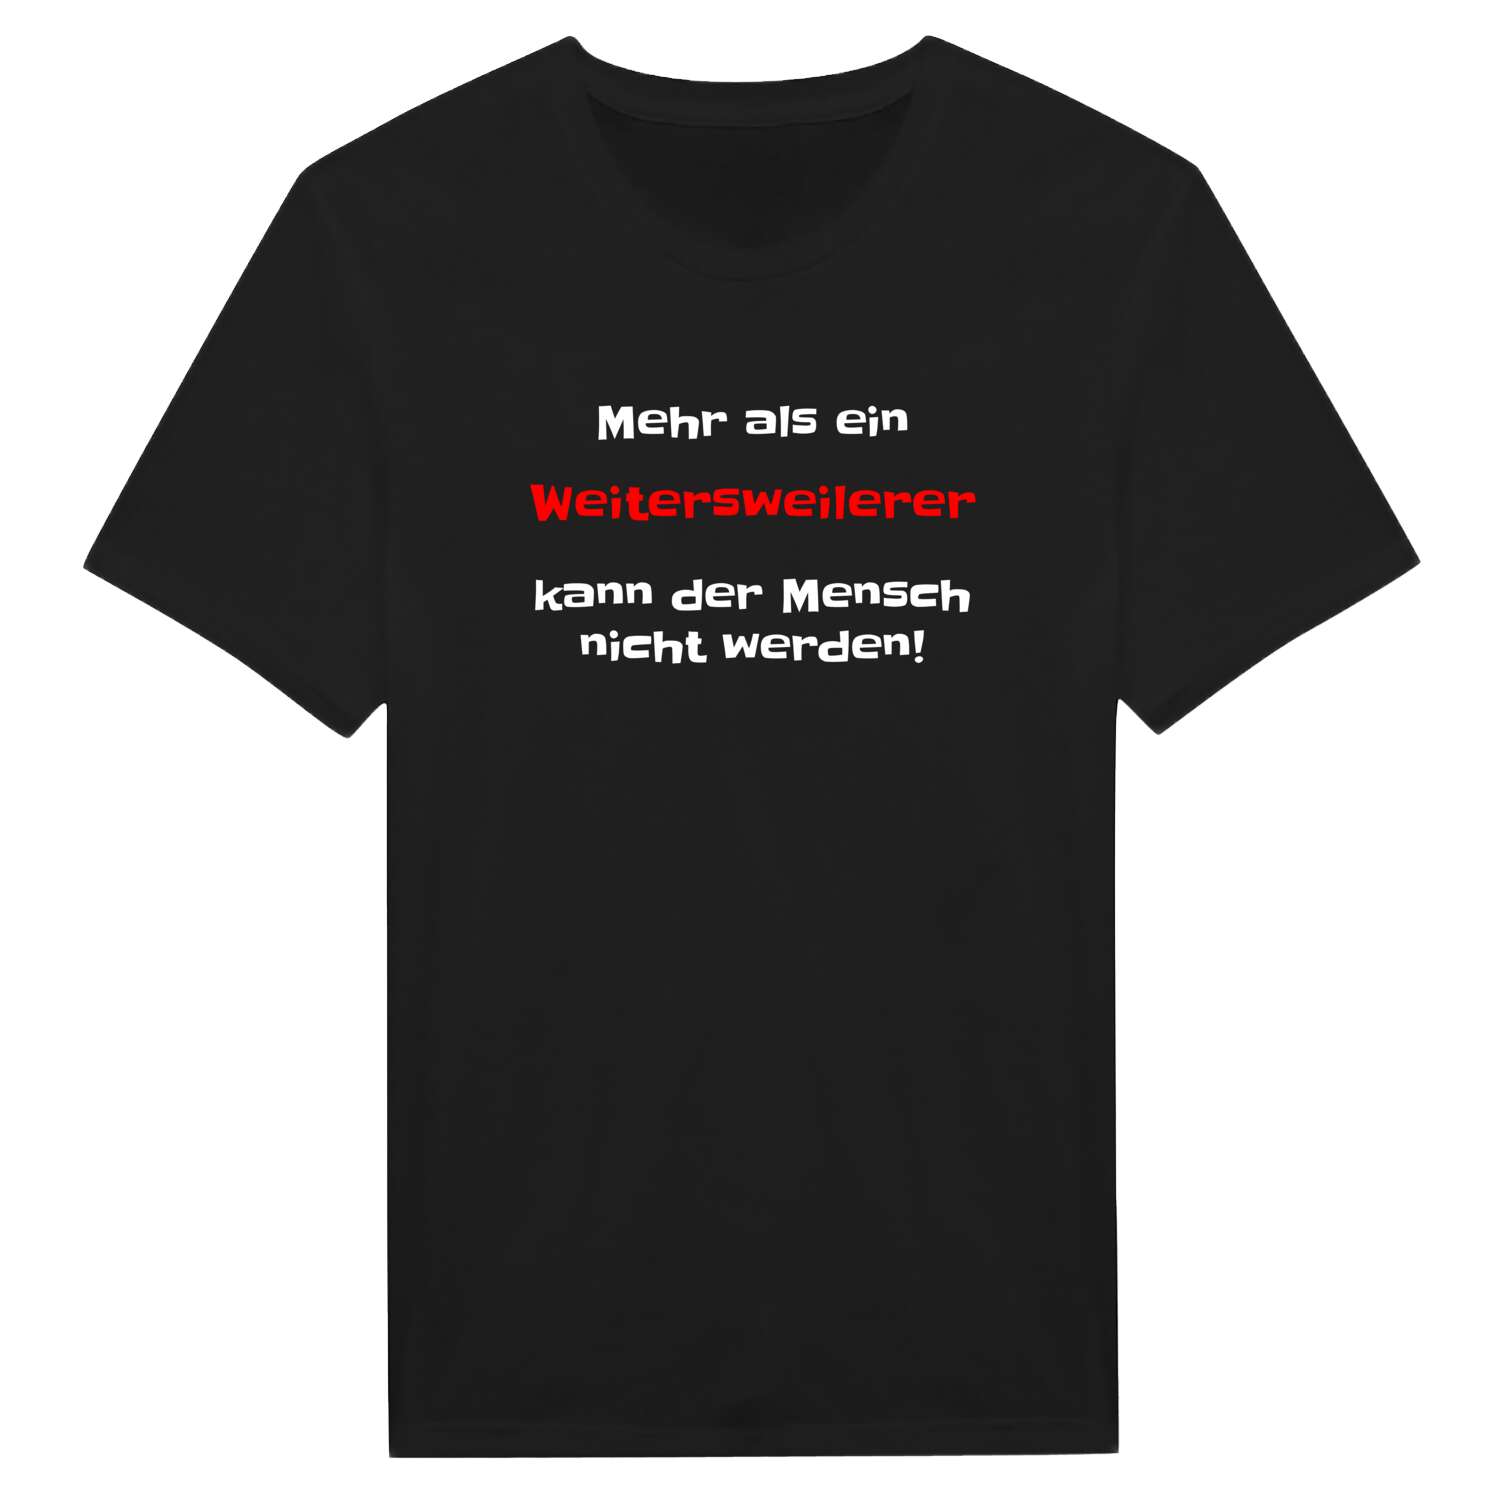 Weitersweiler T-Shirt »Mehr als ein«